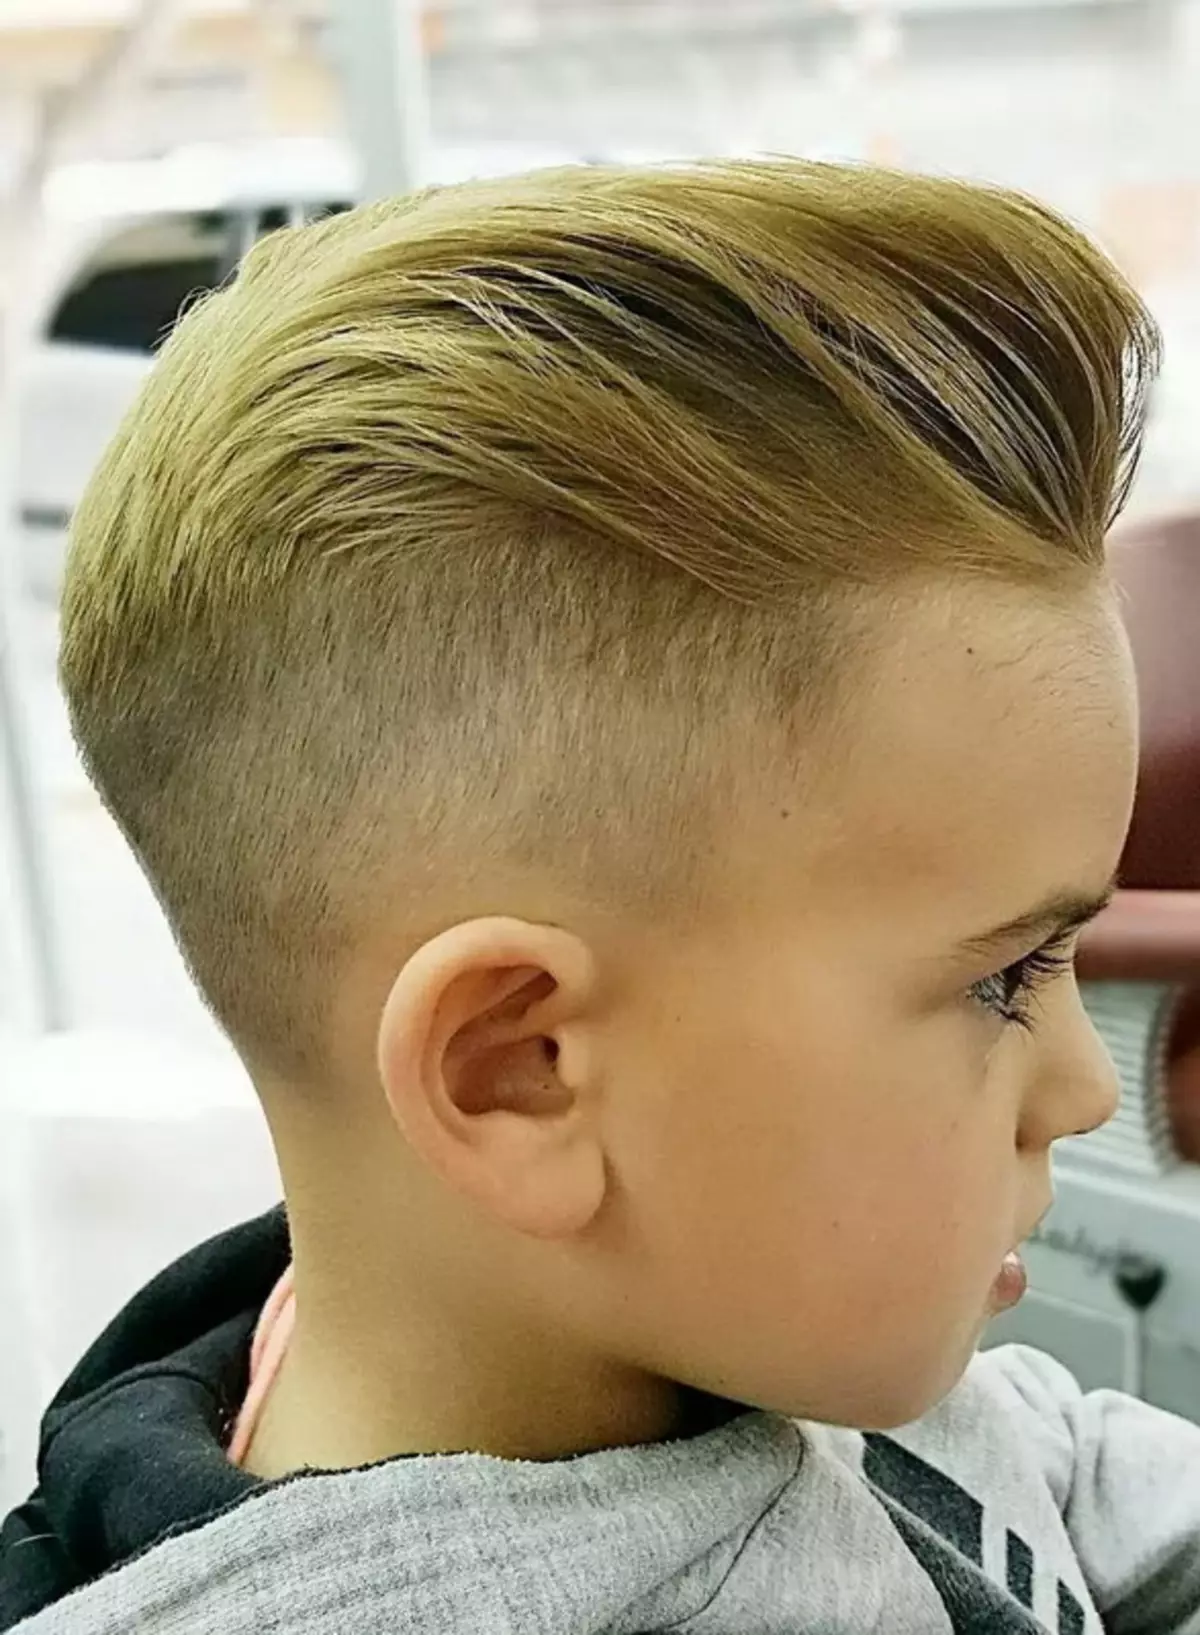 Half-Fox for Boys（39写真）：5歳から10年間の赤ちゃんの散髪のためのヘアスタイル 6005_19